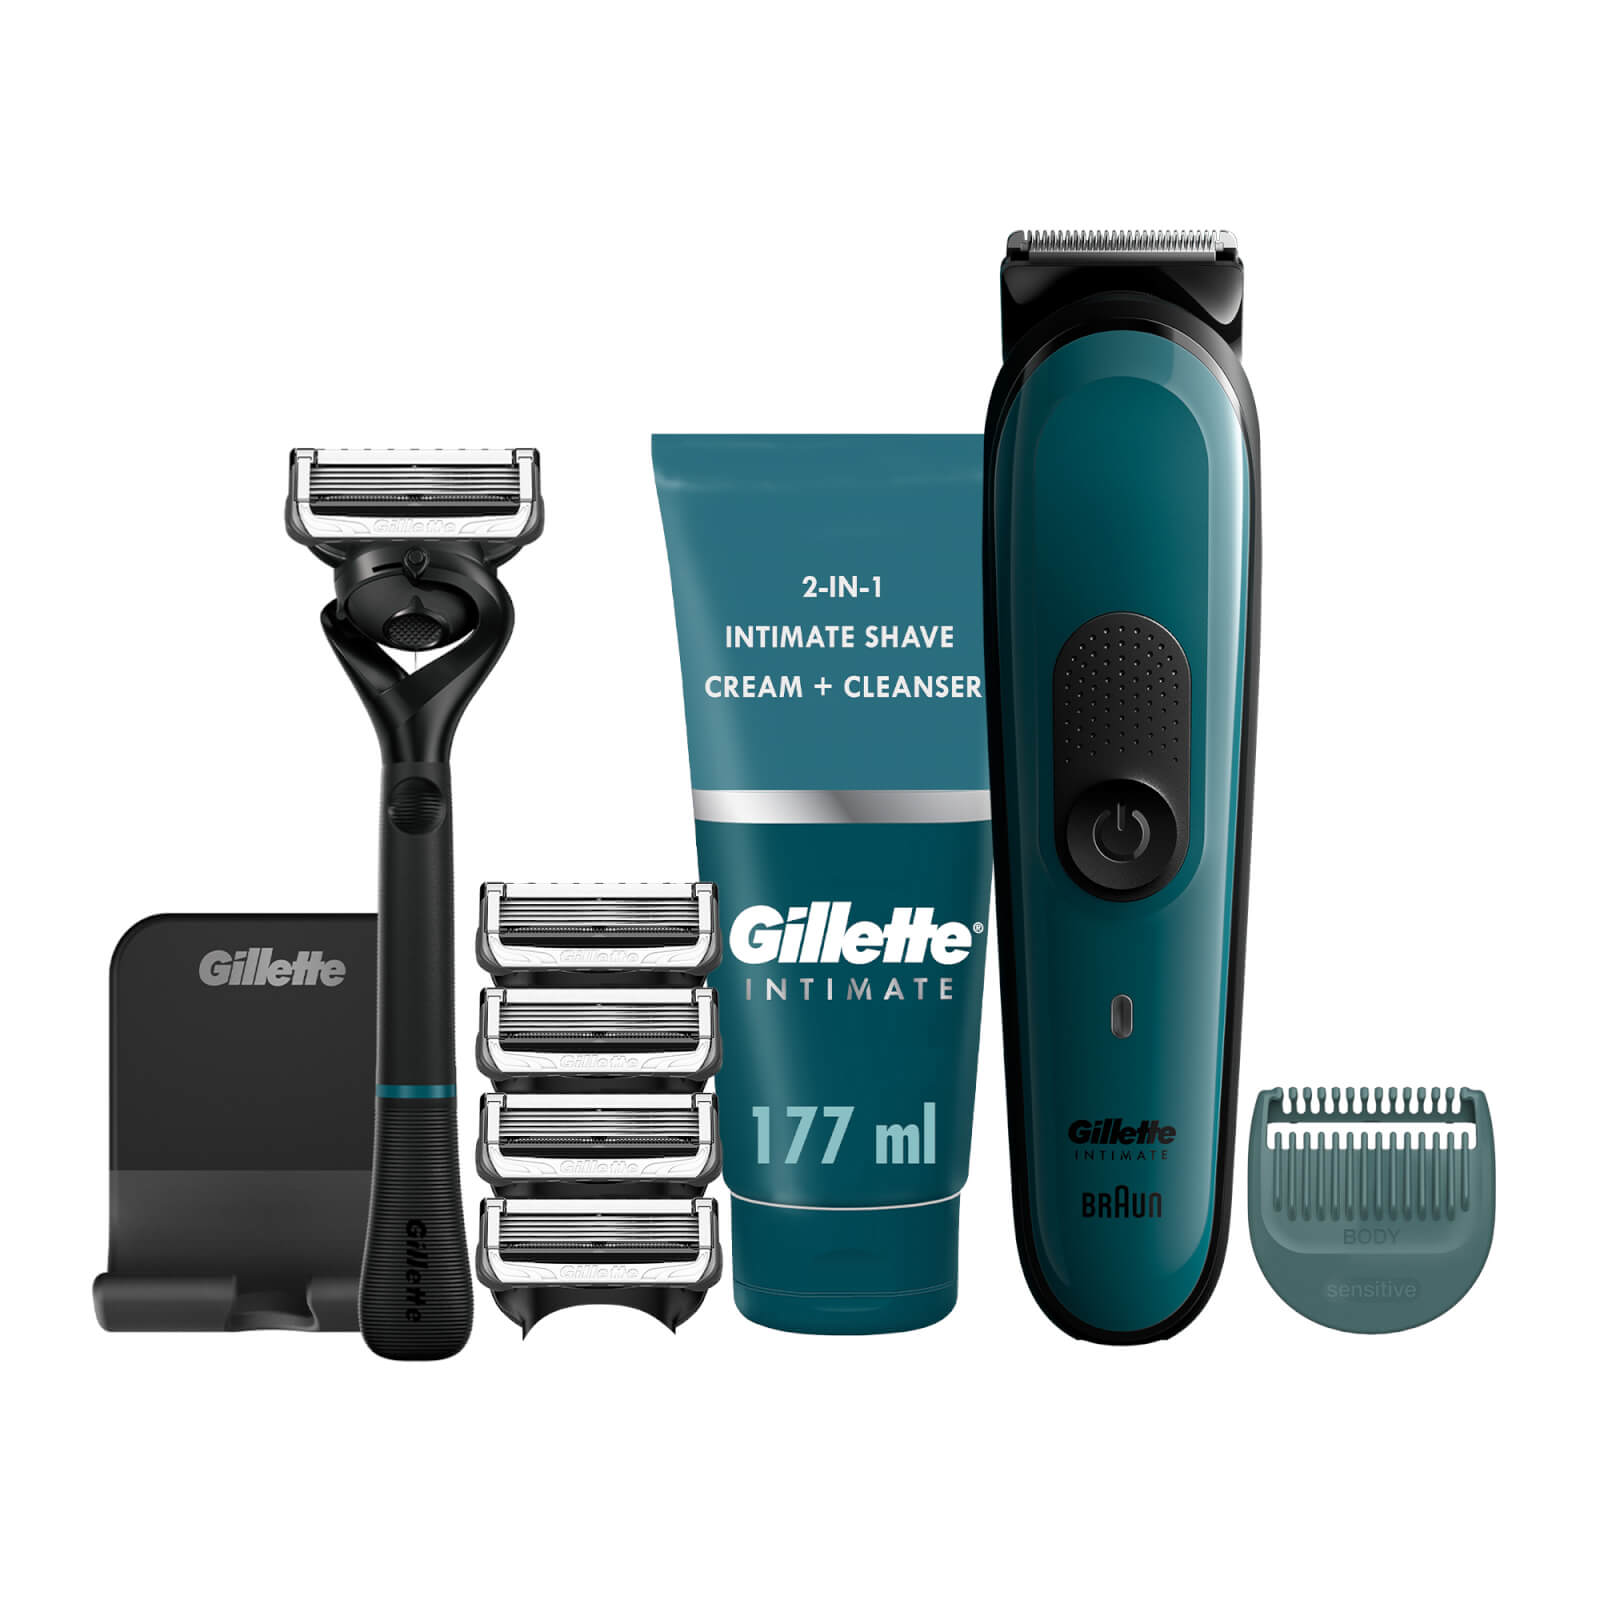 Gillette Intimate Shaving Kit - Trimmer i3  Razor  Blade Refills & Shave Cream